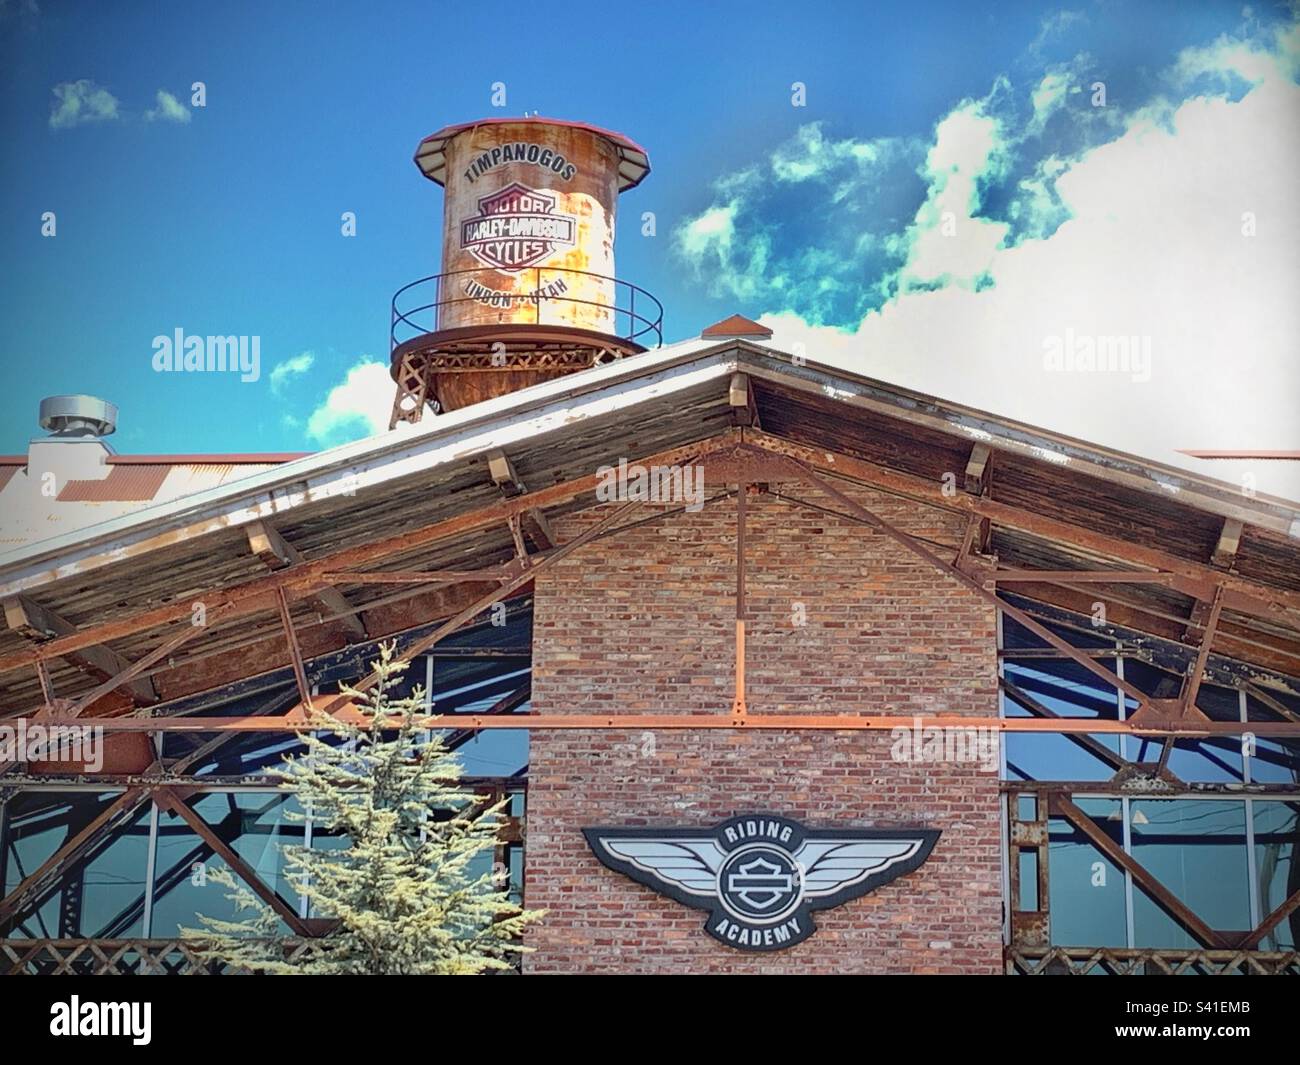 Concessionnaire Summit Harley-Davidson à Lindon, Utah. L'un des meilleurs endroits de l'Intermountain West pour toutes choses Harley-Davidson. Banque D'Images